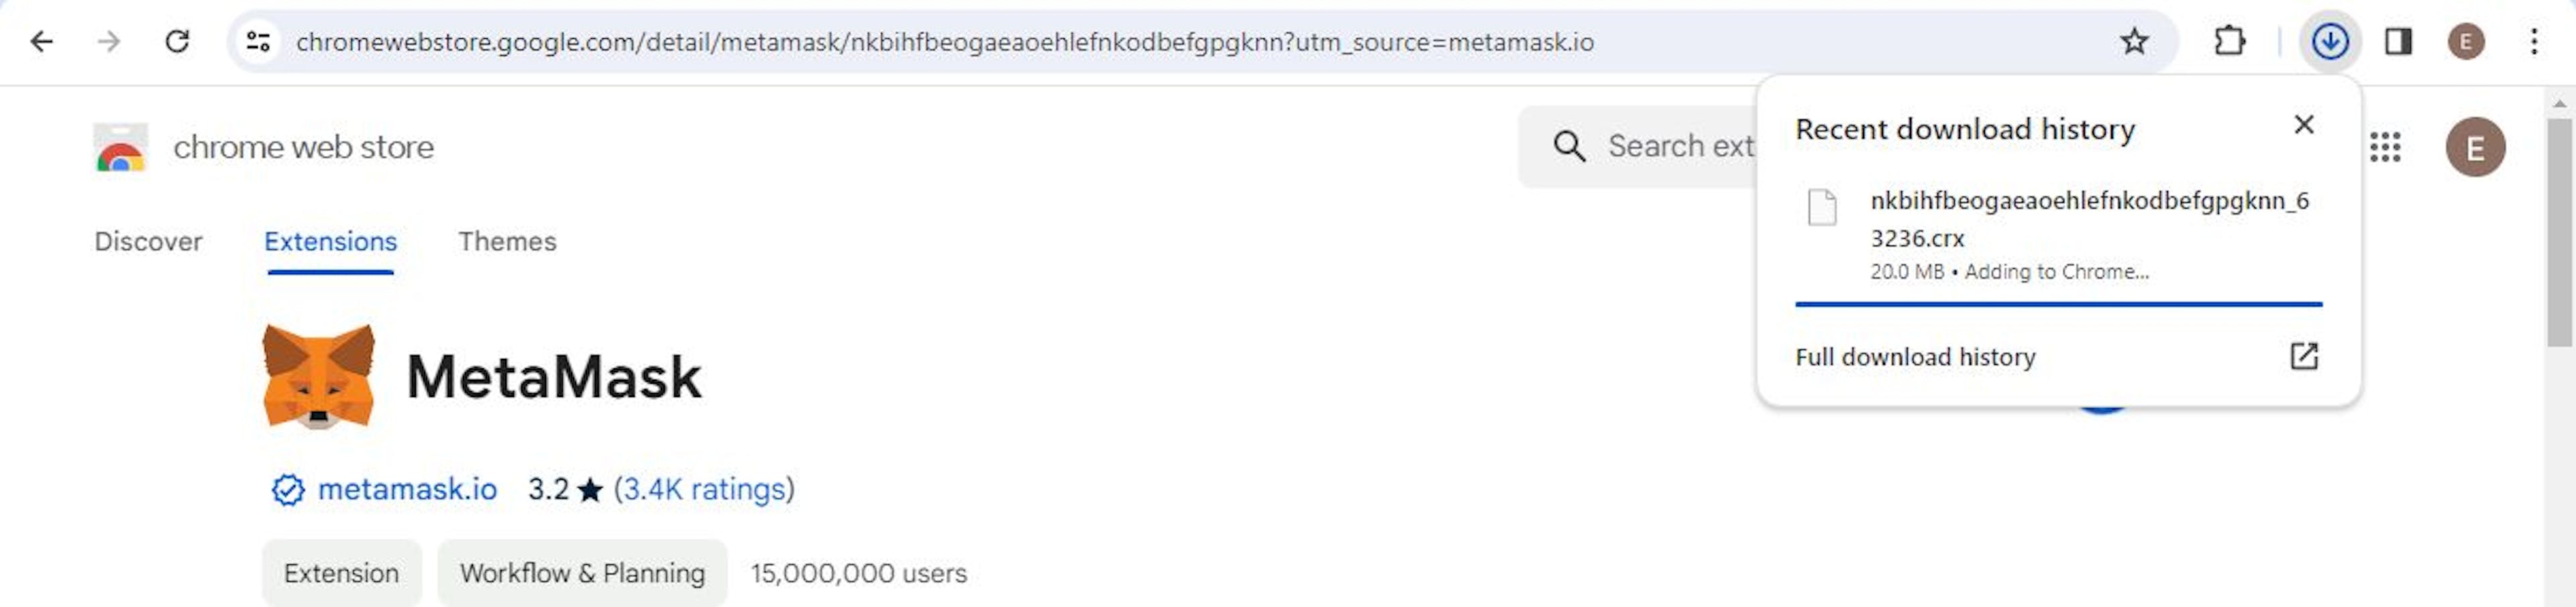 Hình ảnh hiển thị quá trình cài đặt MetaMask trên Chrome.